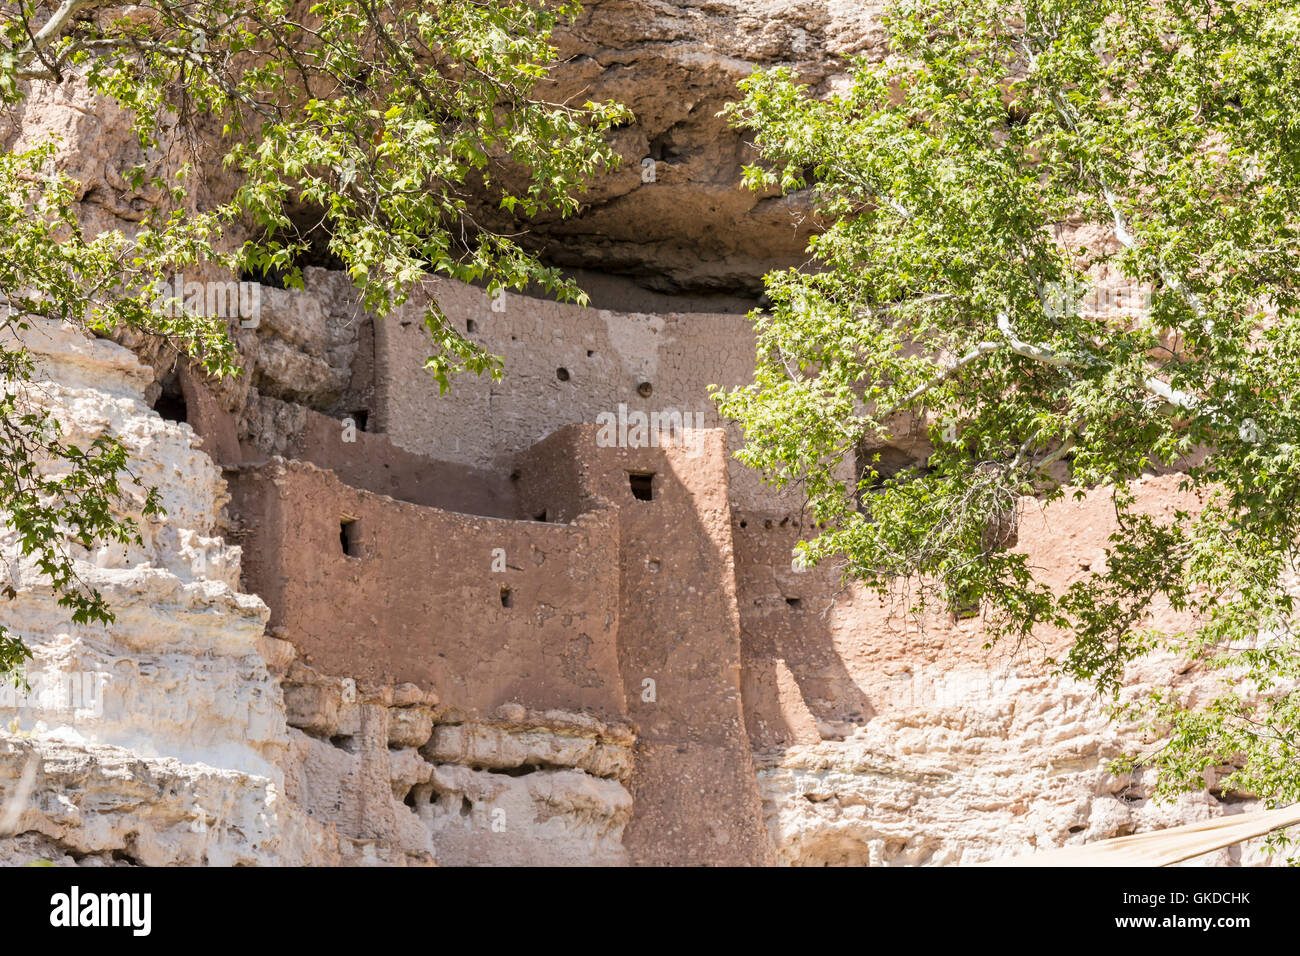 La Native American Cliff dwellings de Montezuma Castle National Monument, Arizona, vu à travers les branches de sycomores. Banque D'Images